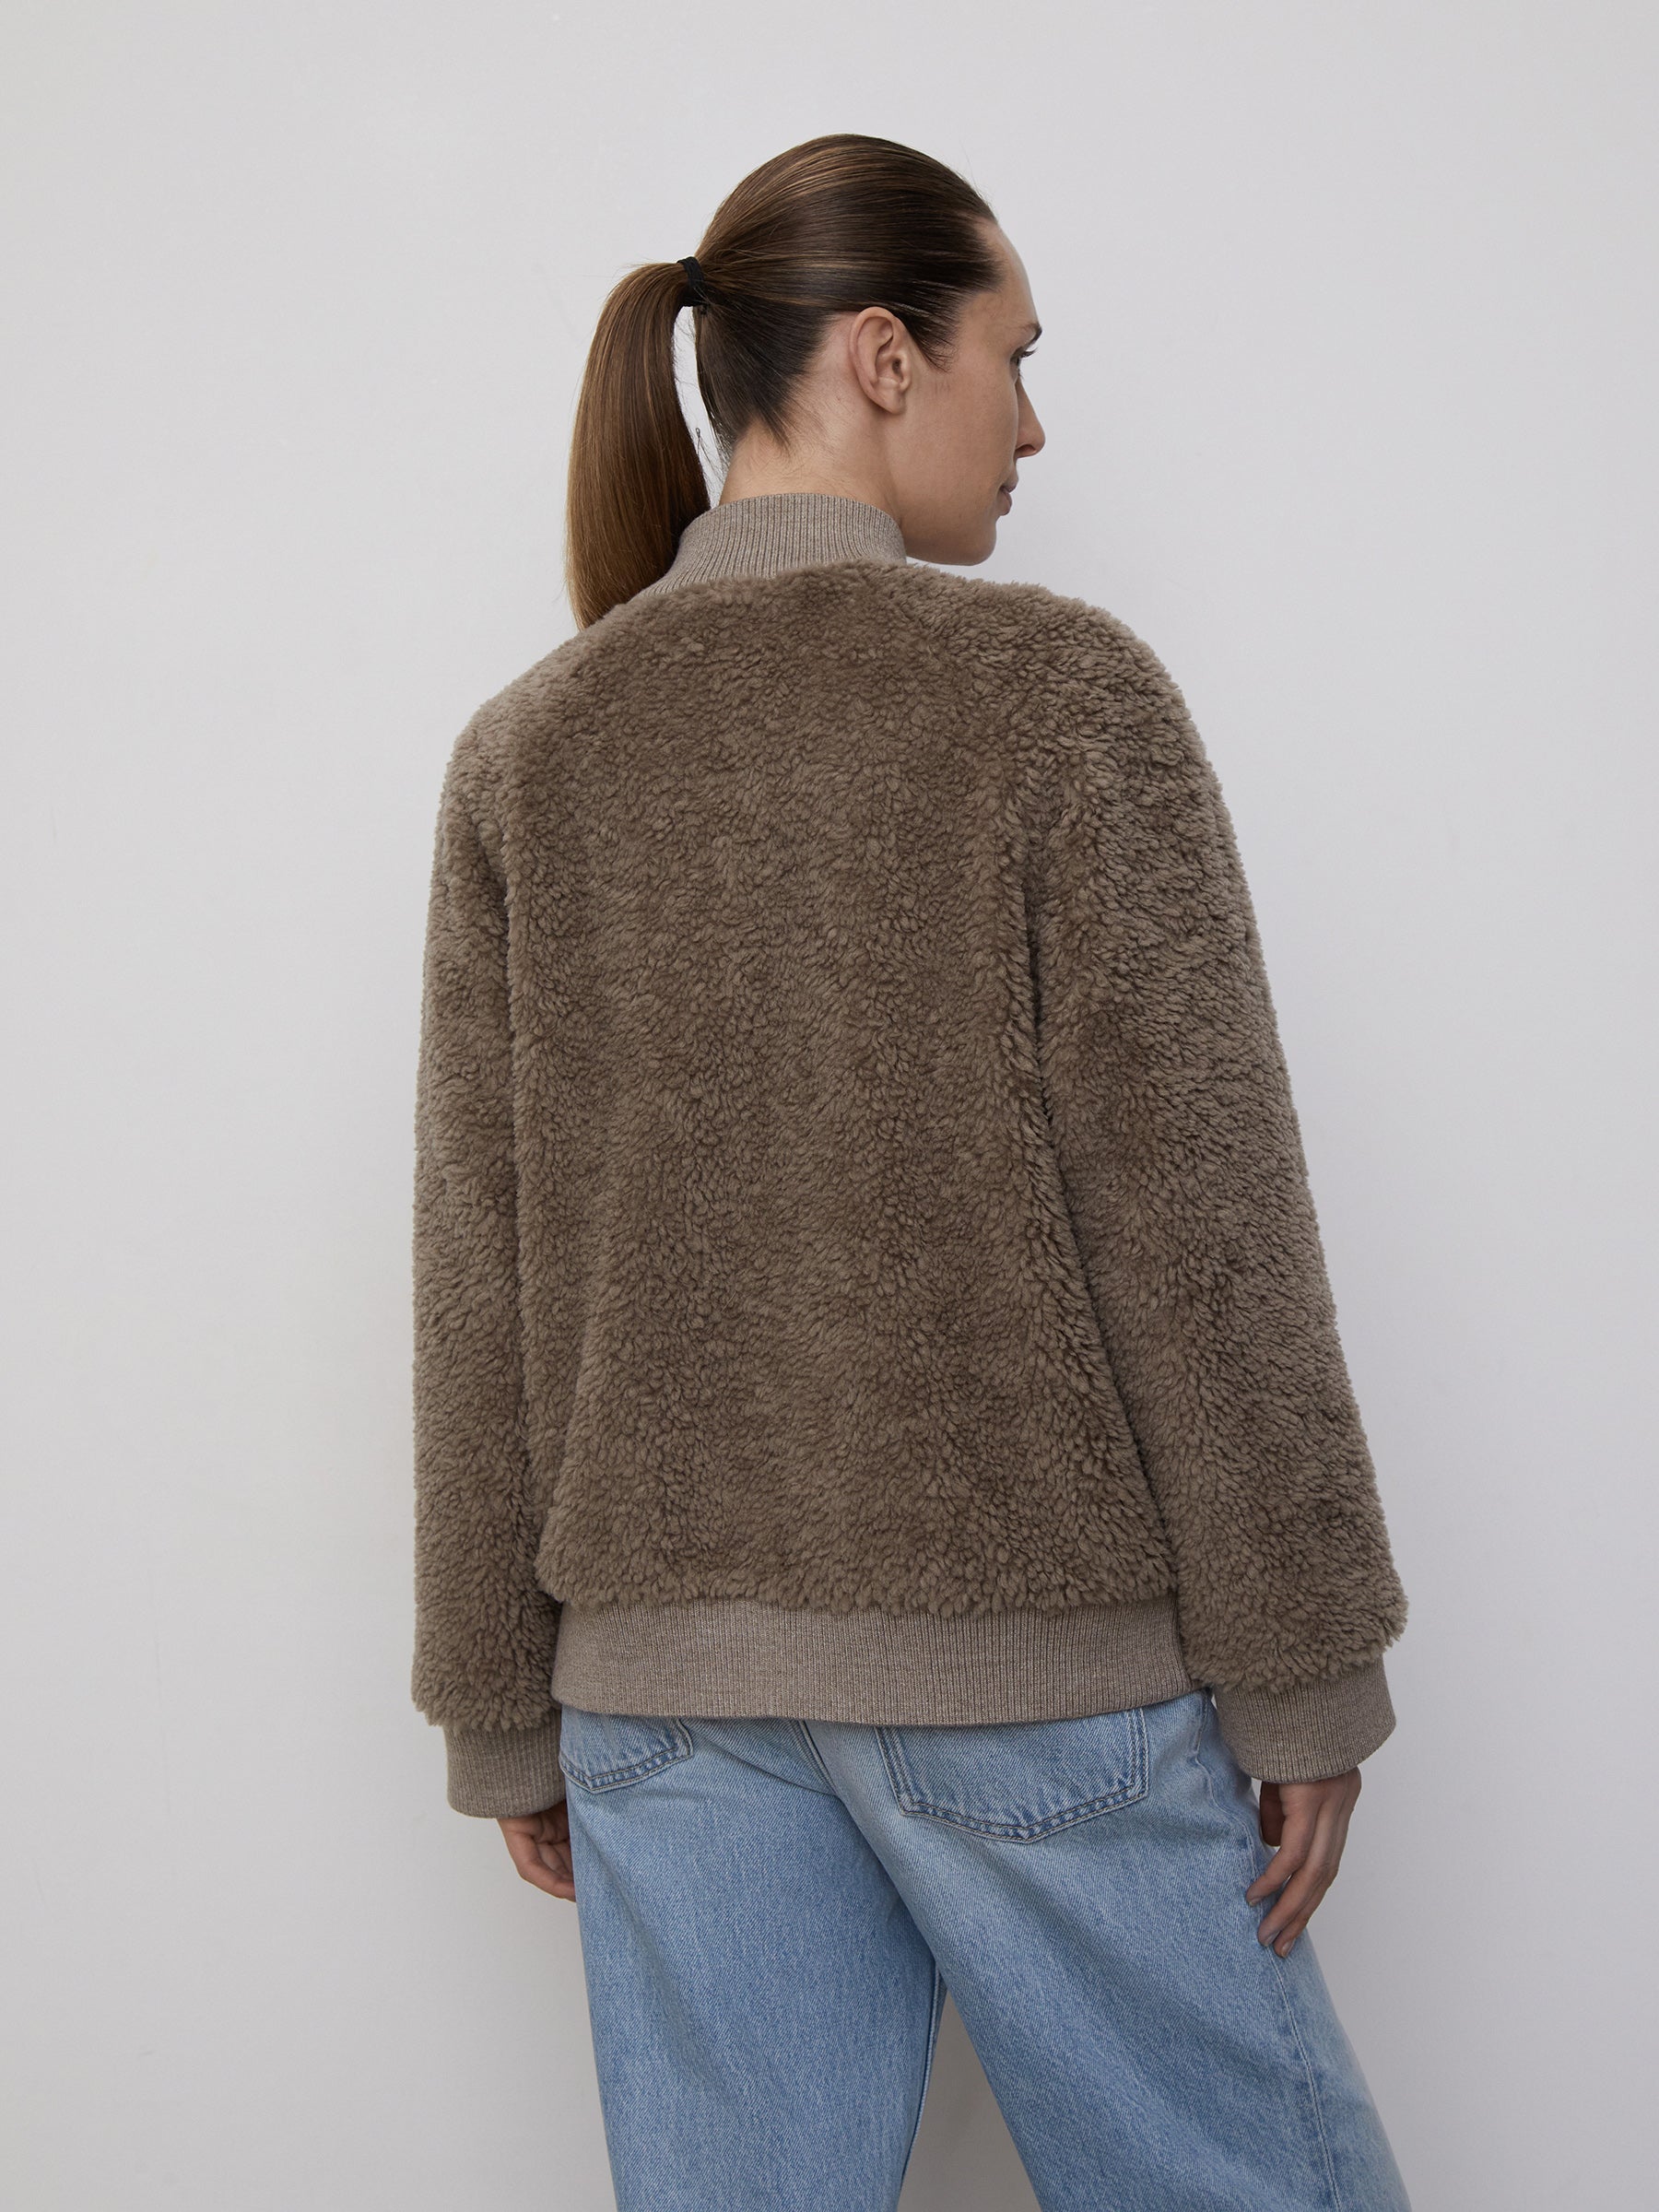 Wool-fleece bomber jacket